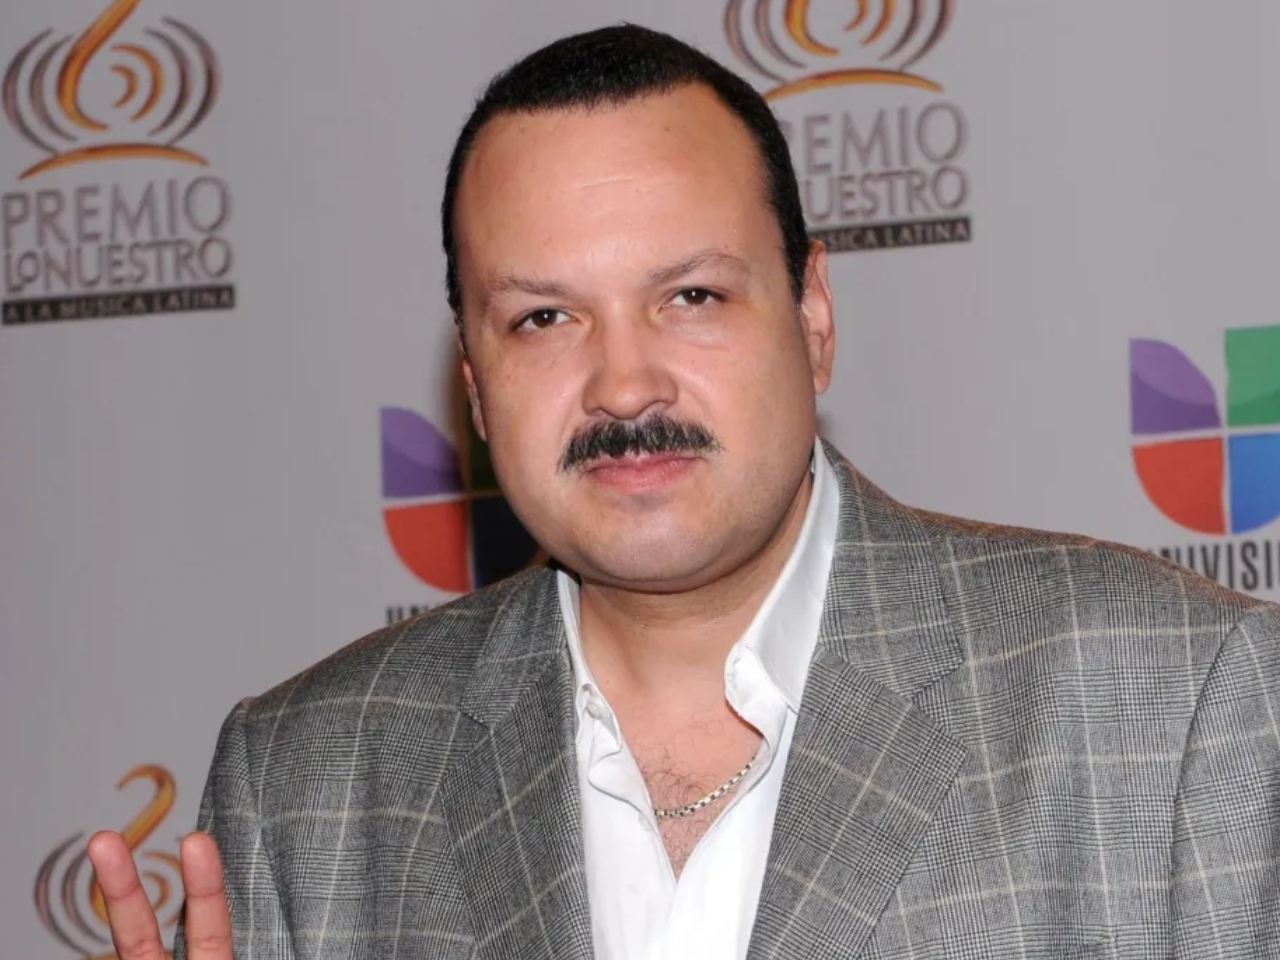 Pepe Aguilar heredó el gusto por la música de su padre, Antonio Aguilar, y que pasó a sus hijos Ángela y Leonardo